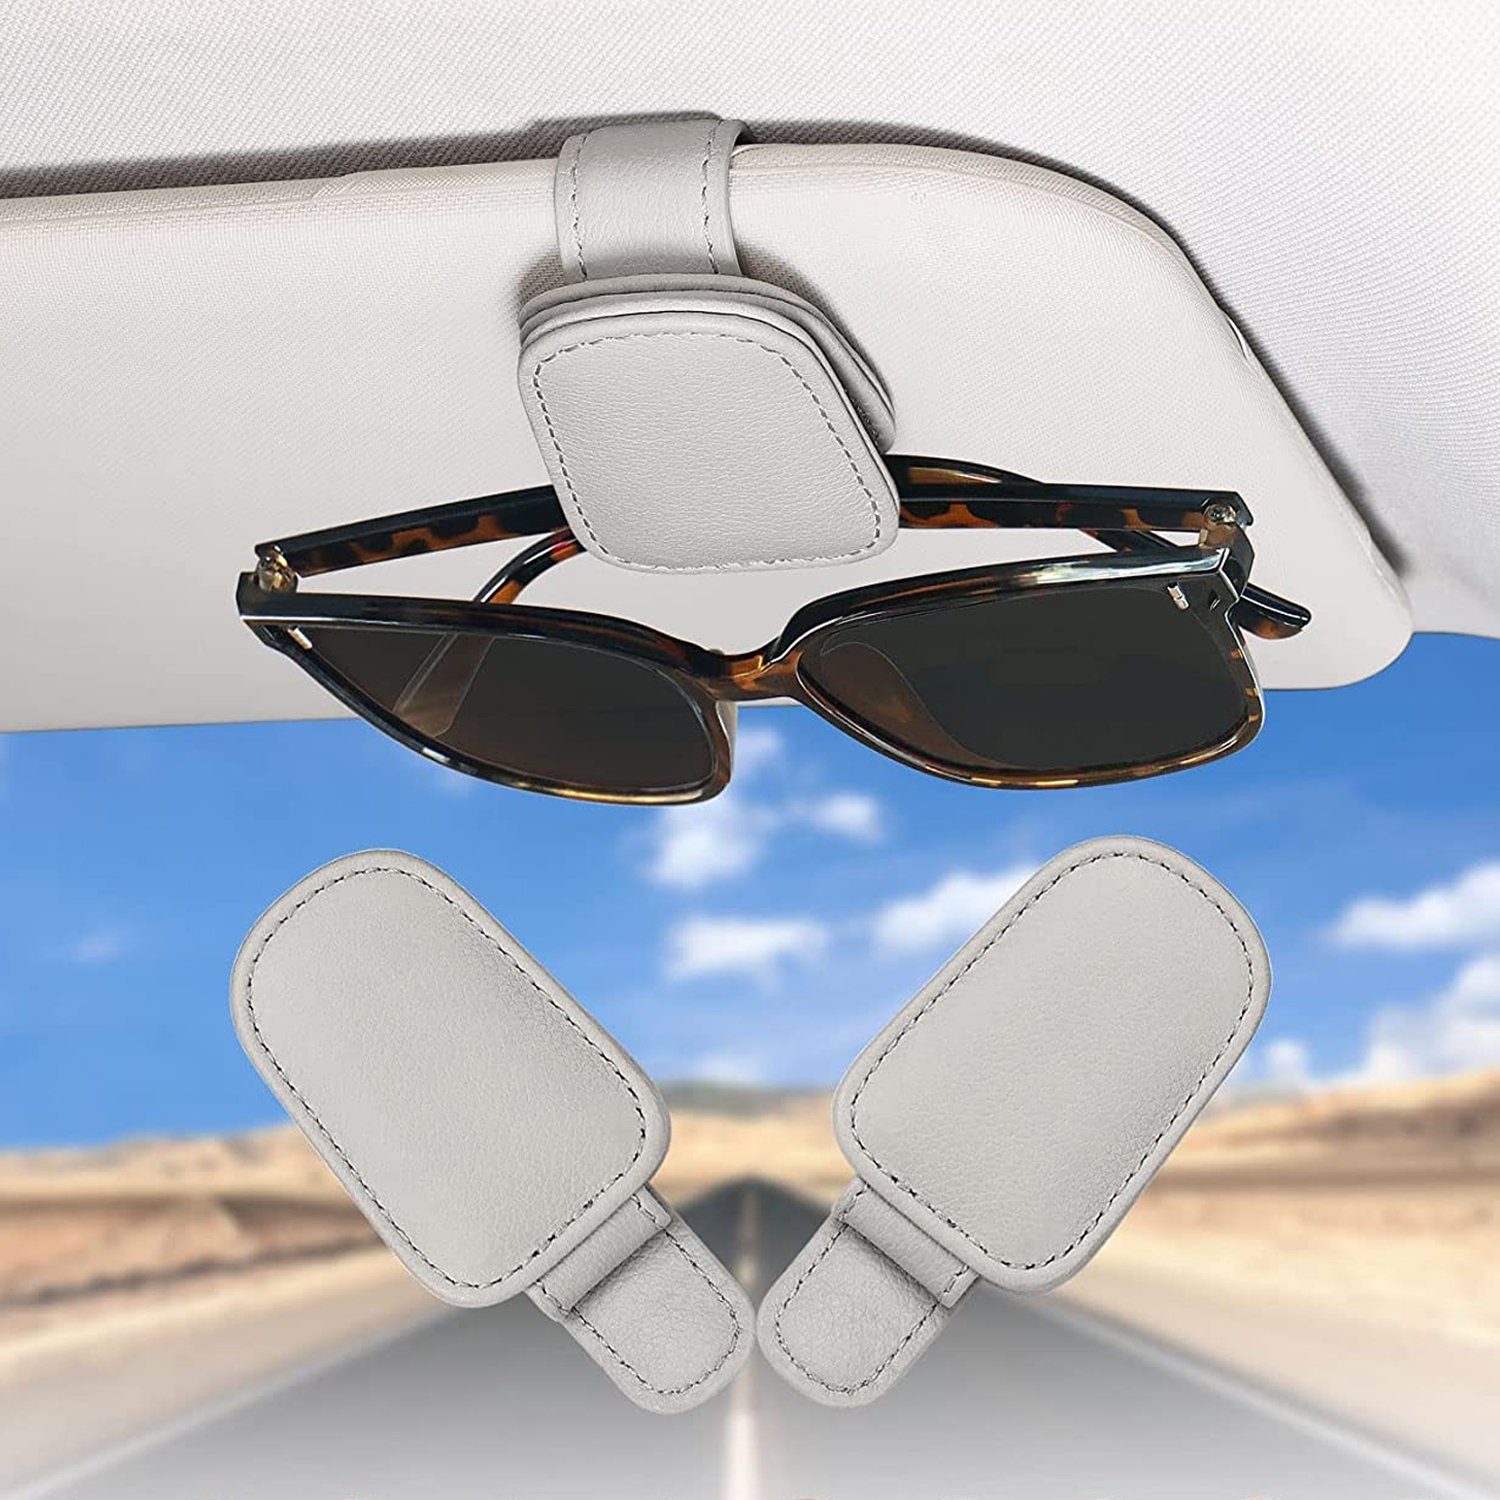 2 Pack Brillenhalter für Auto Sonnenblende,Auto Brillenhalter,Brillenhalter  für Auto Sonnenblende,Auto Visier Zubehör,car sunglasses holder,Auto